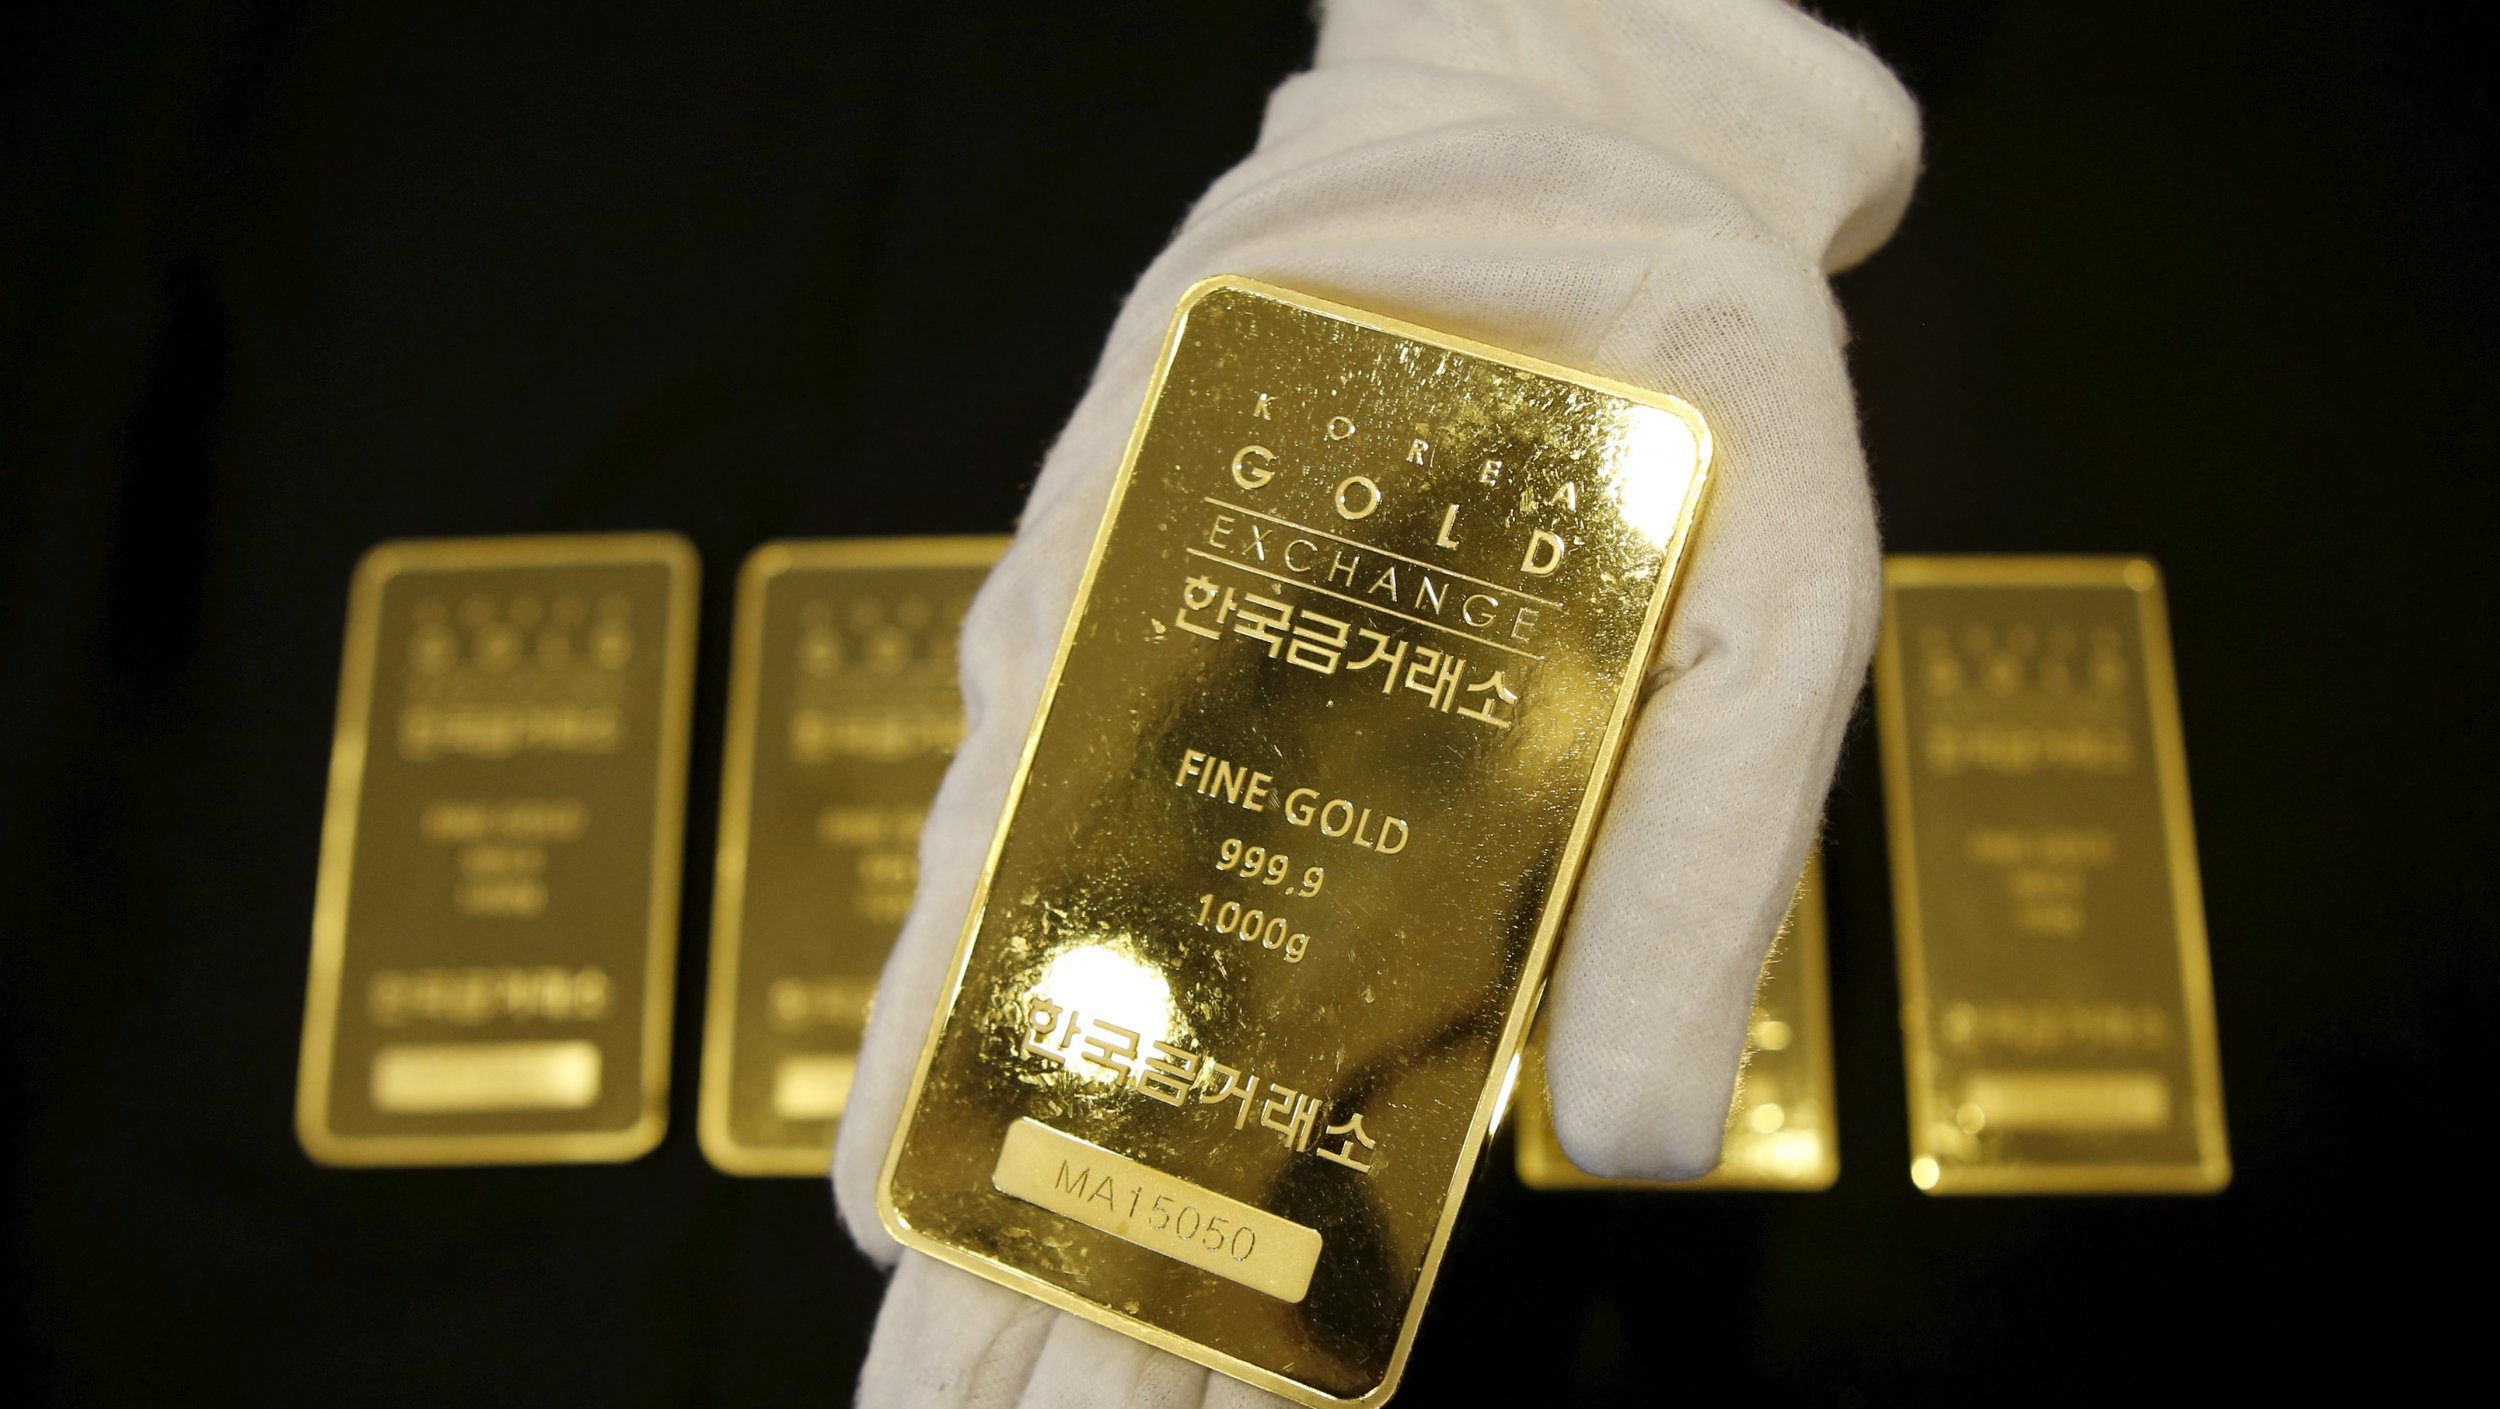 Svizzera: sacco con tre chili d’oro su un treno. Autorità alla ricerca del proprietario